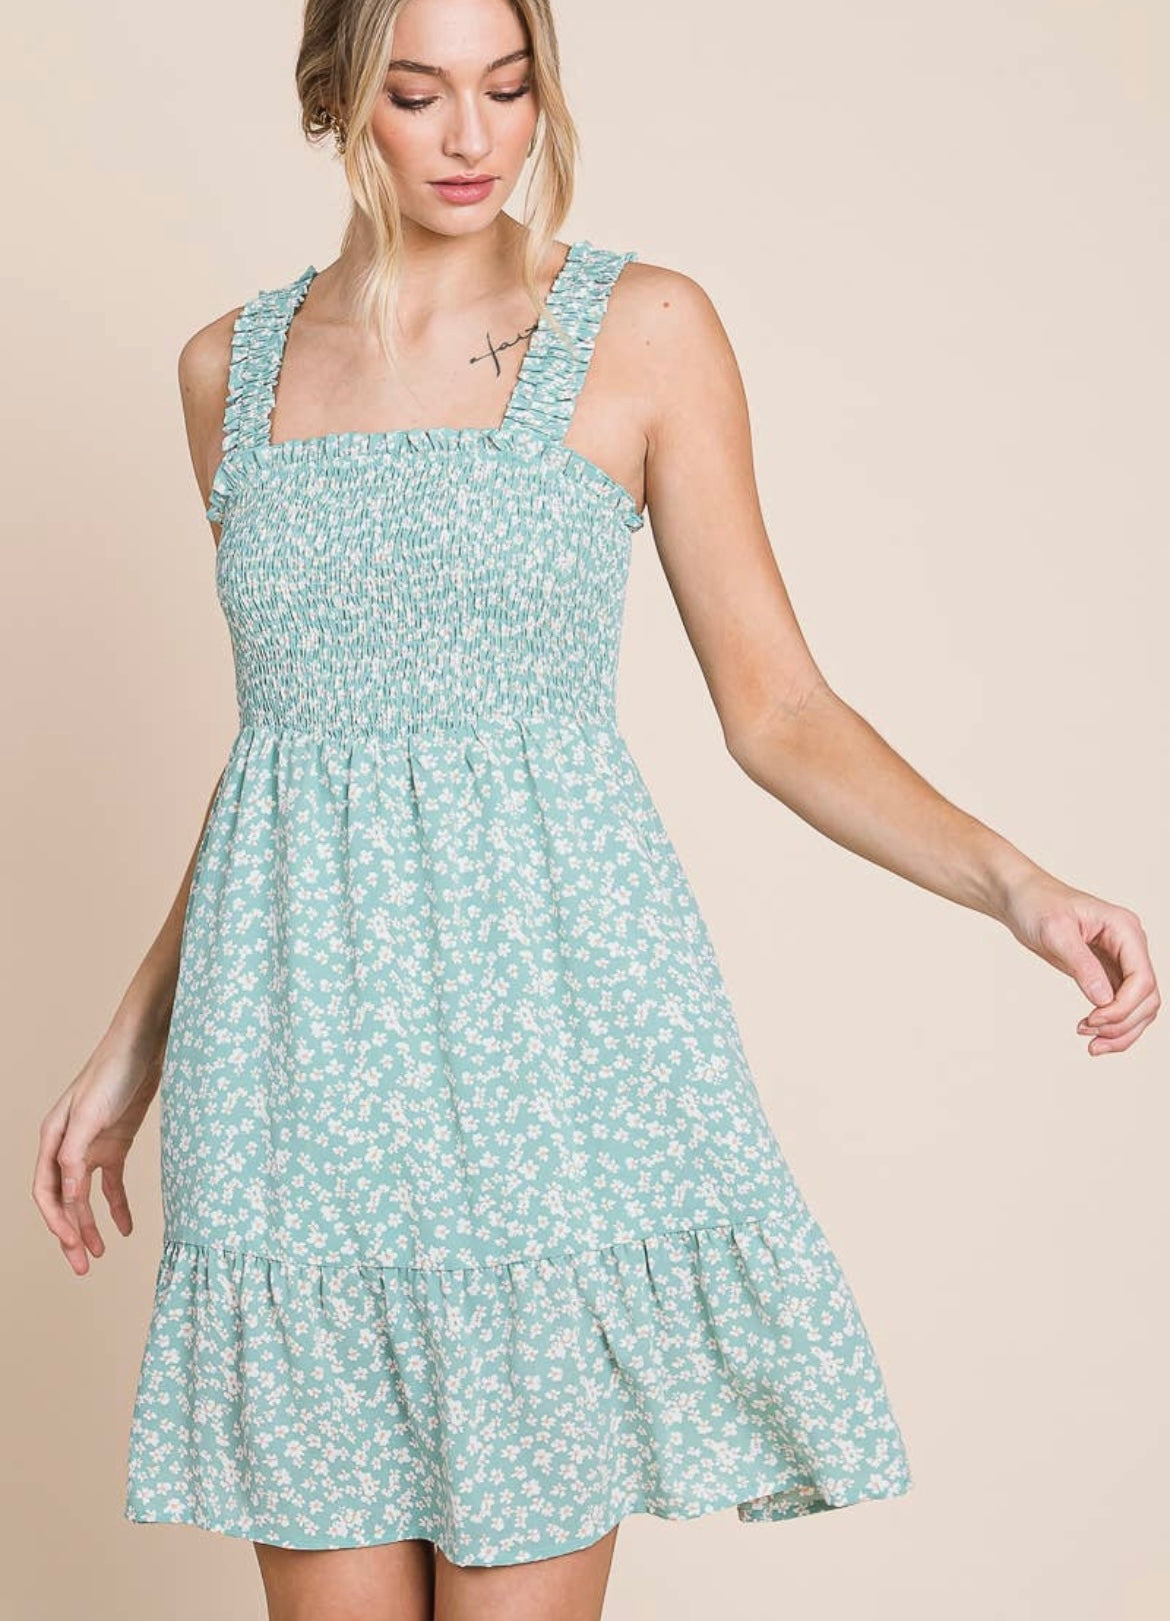 Daisy-printed Smocked Mini Dress With Pockets